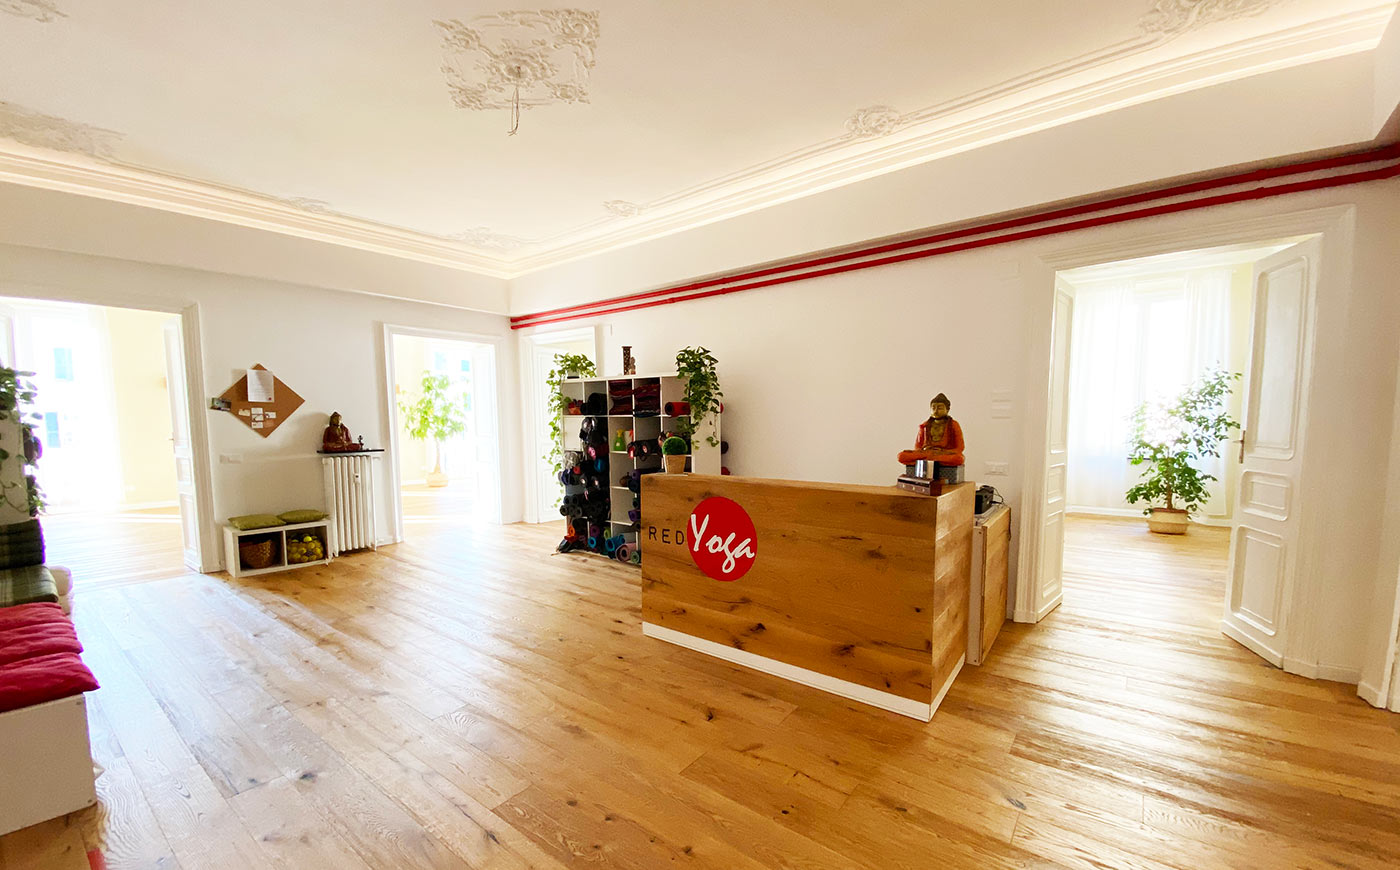 Red Yoga - Studio Yoga a Genova, il tuo spazio è qui!